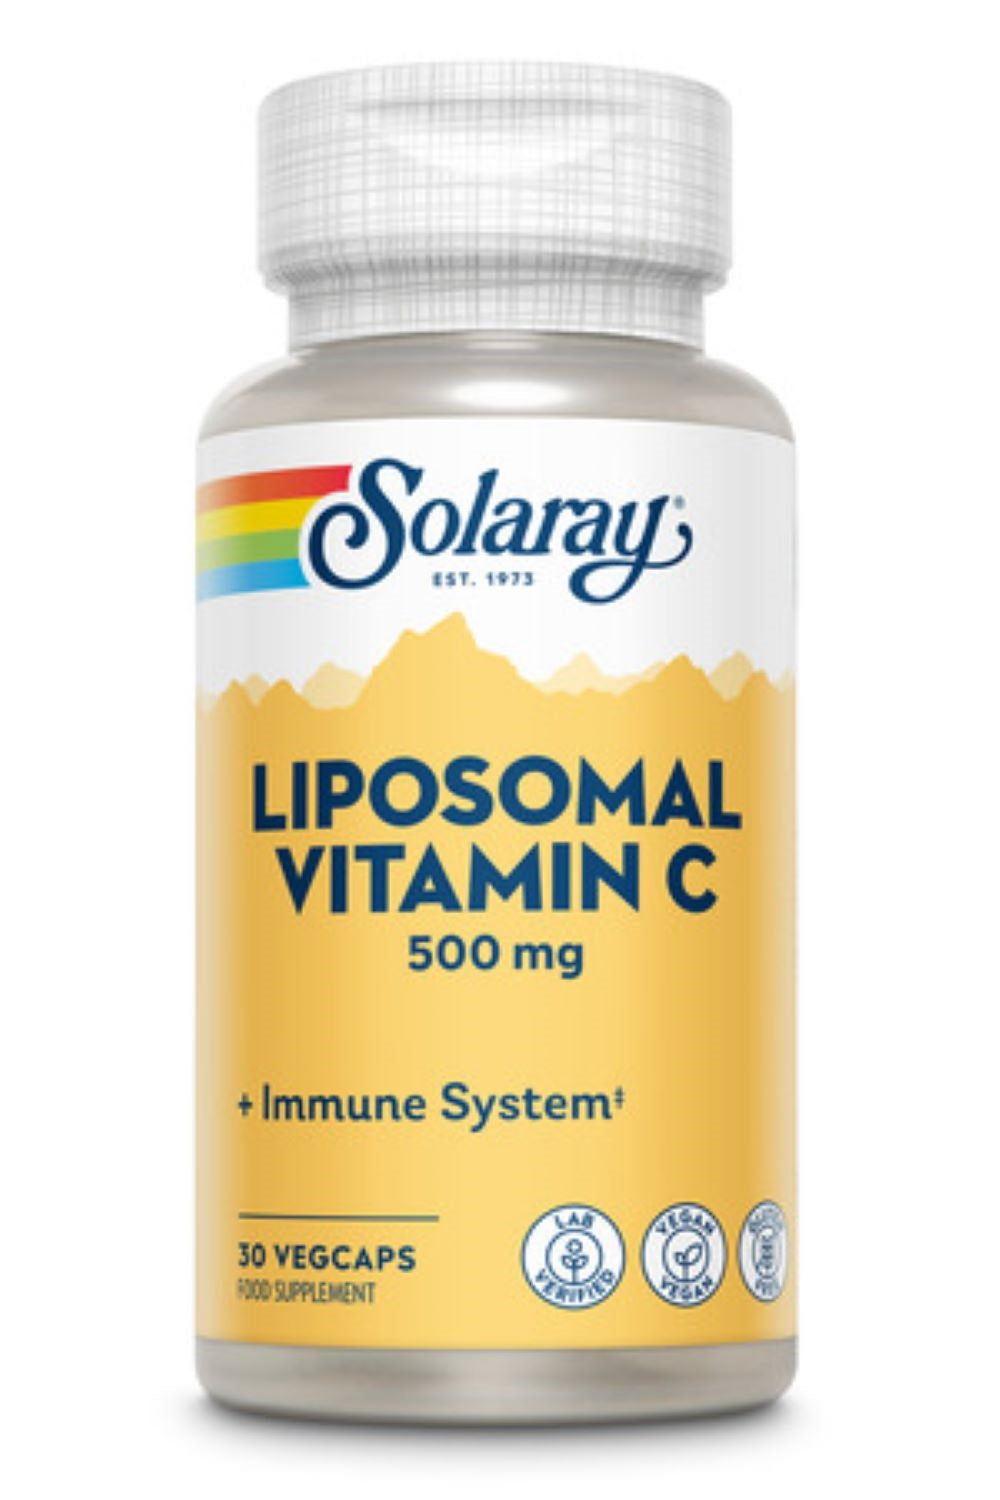 Solaray liposomalt vitamin c - 500 mg, 30 grønnsaker